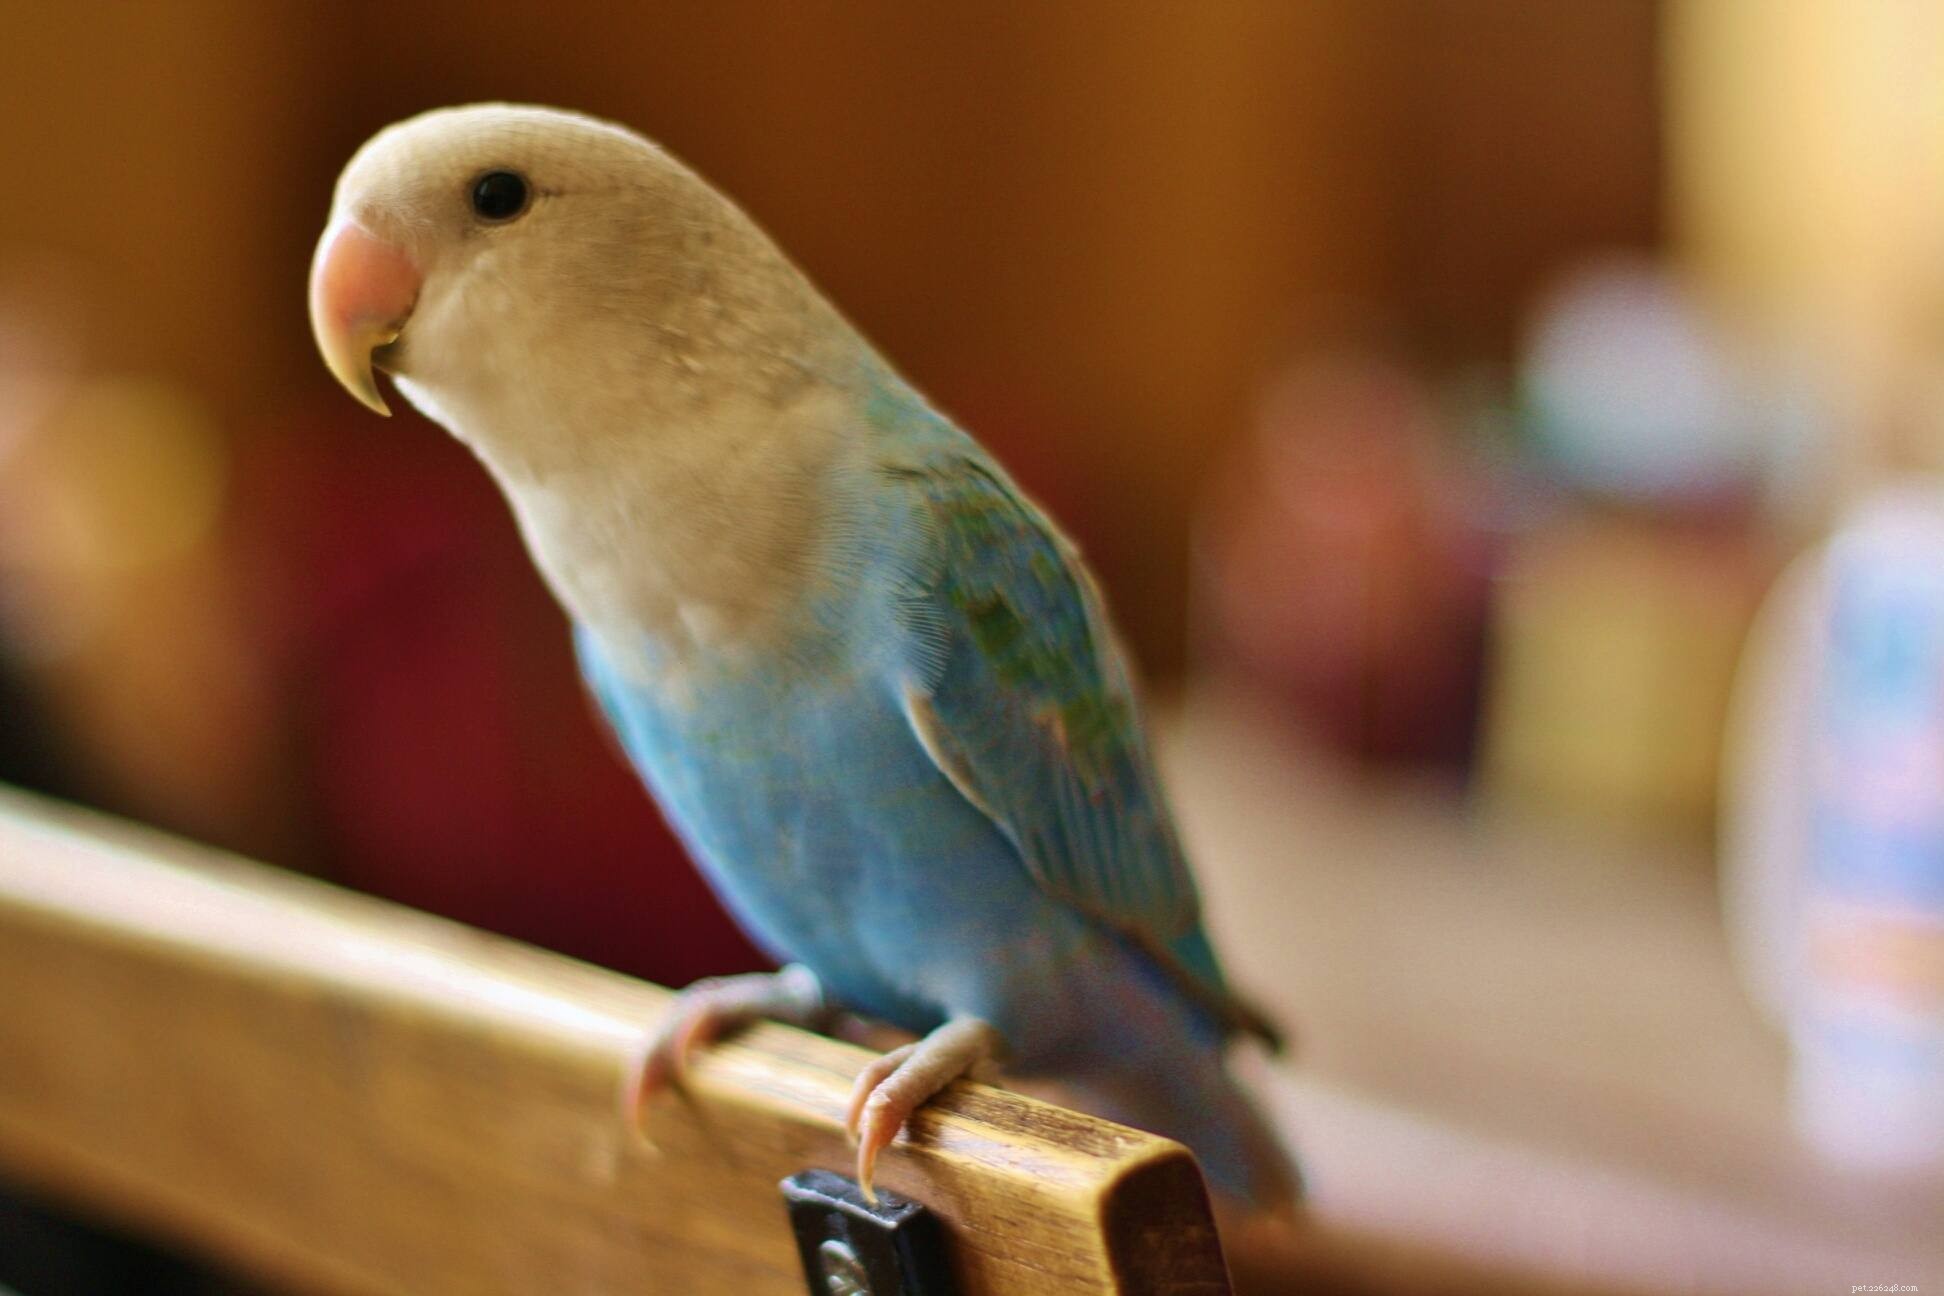 Jak vycvičit svého papouška ke zpěvu